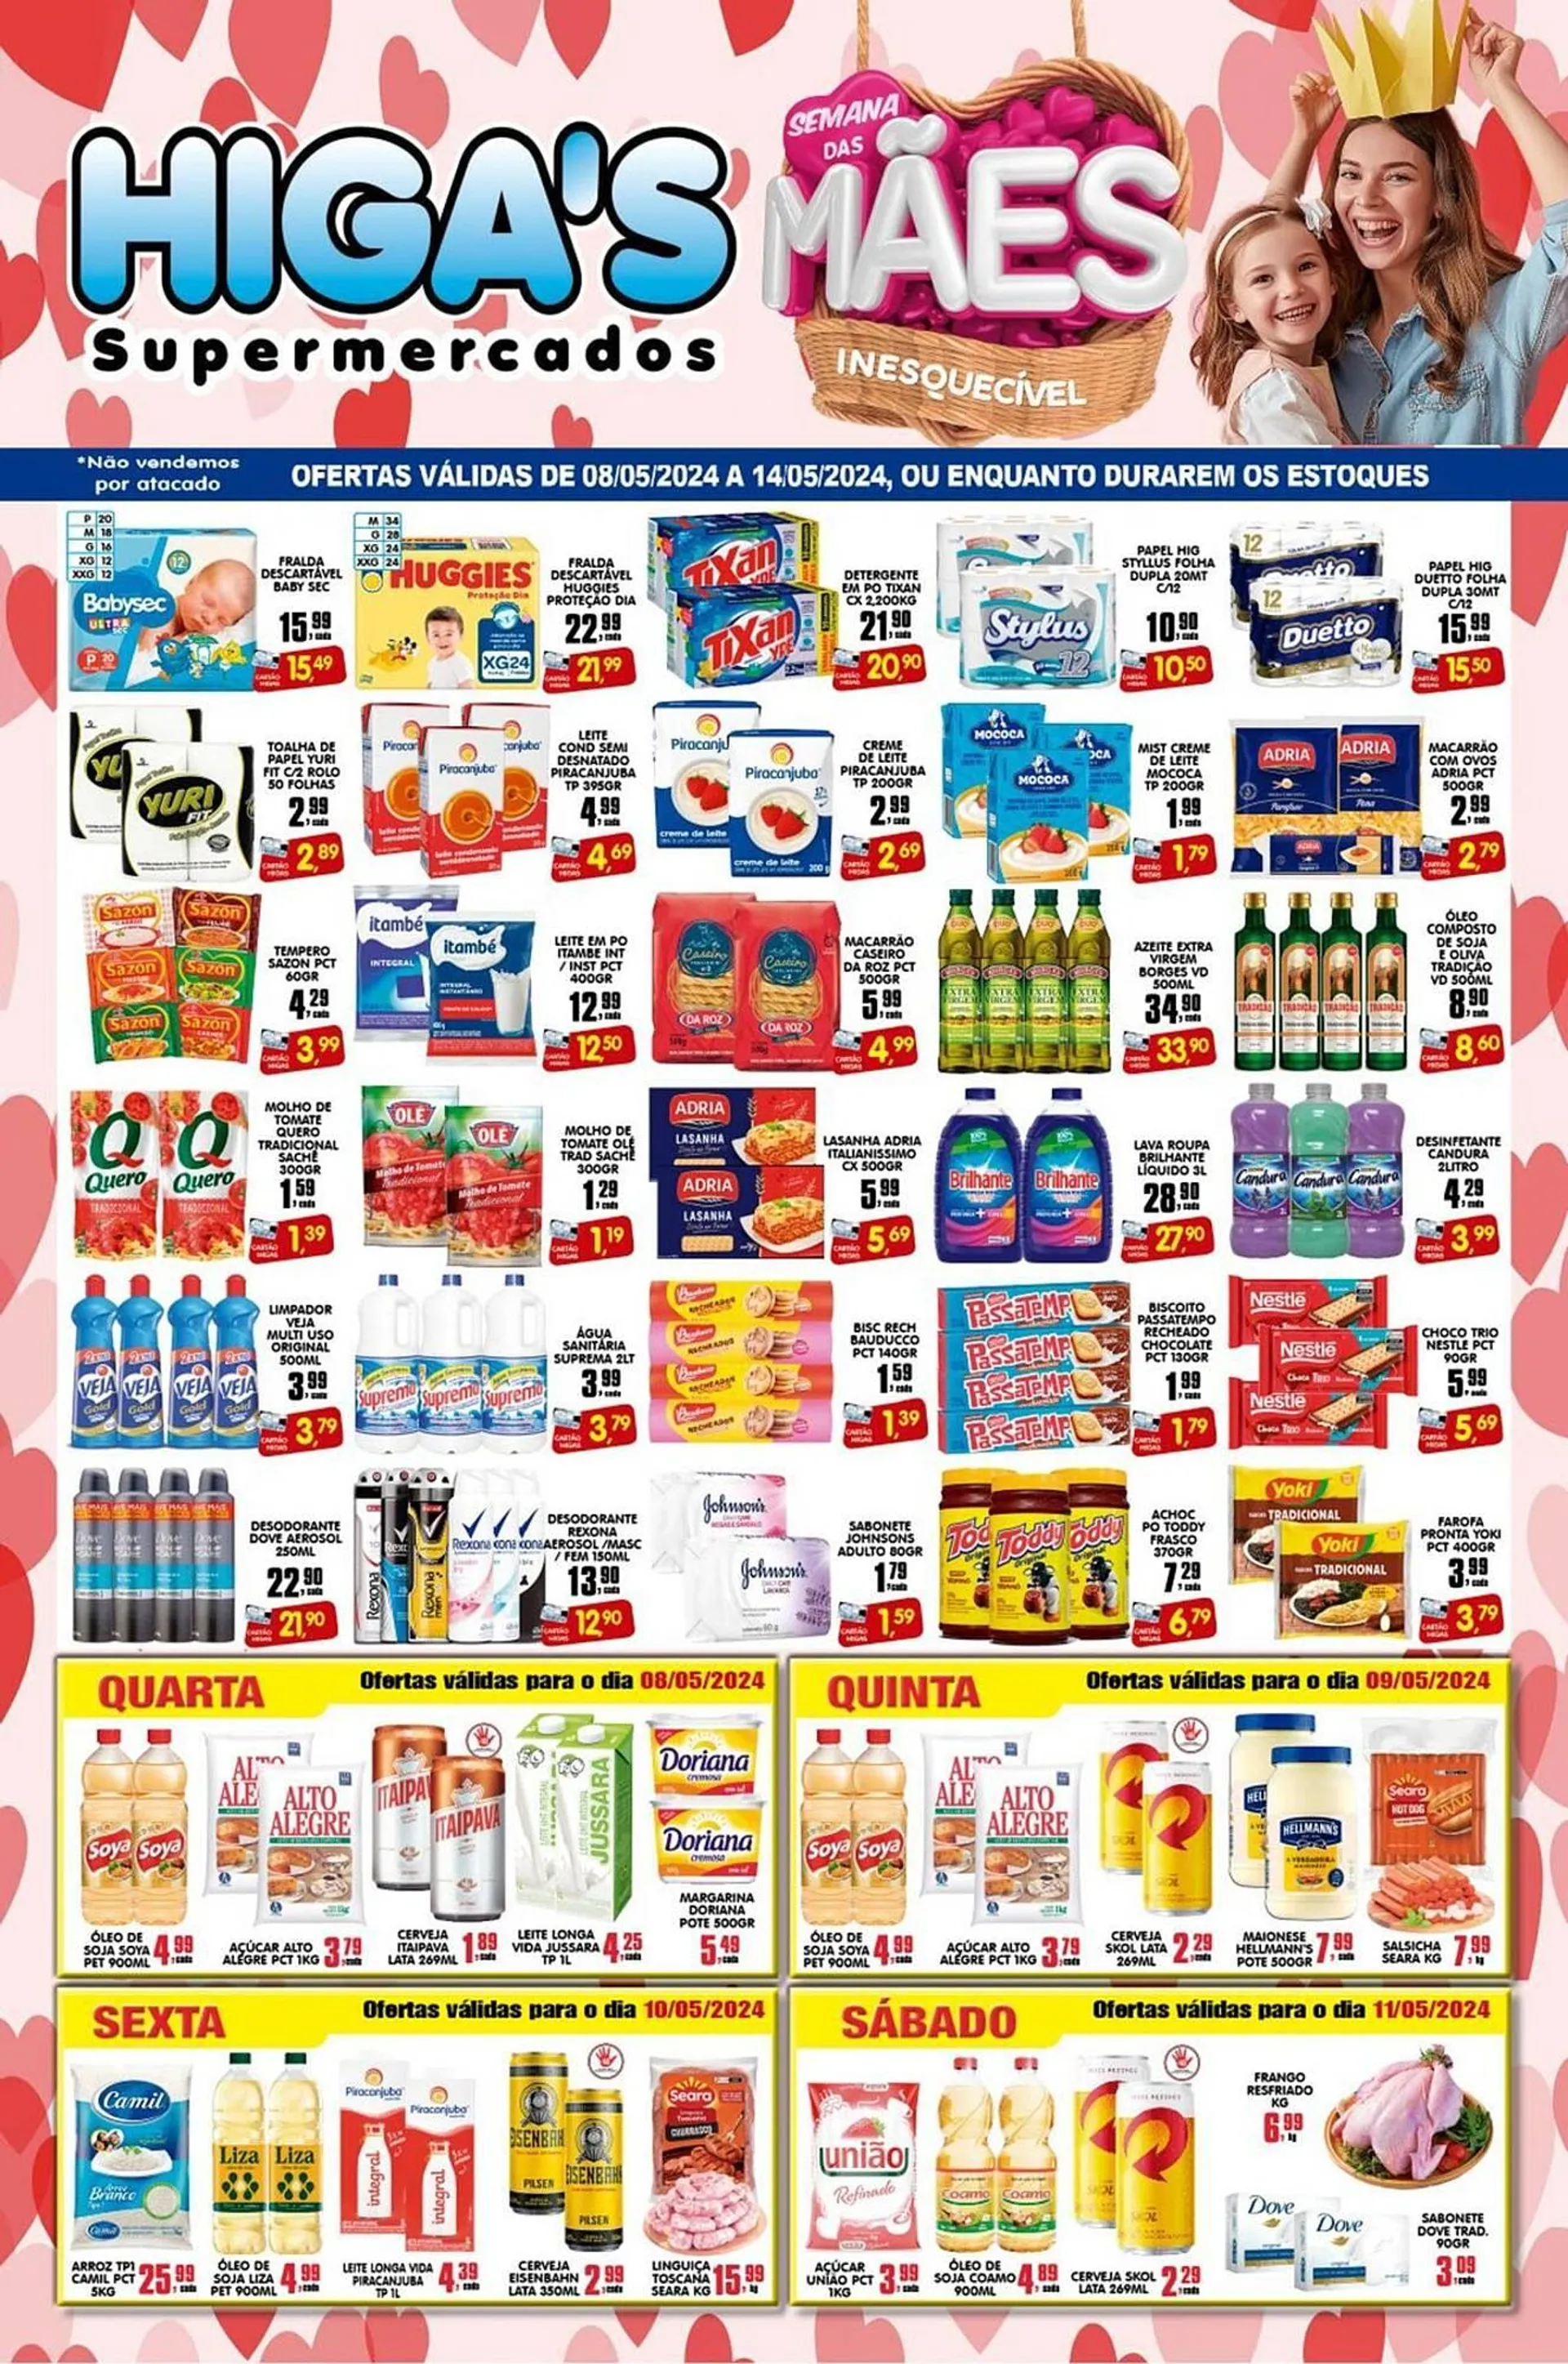 Catálogo Higas Supermercado - 1